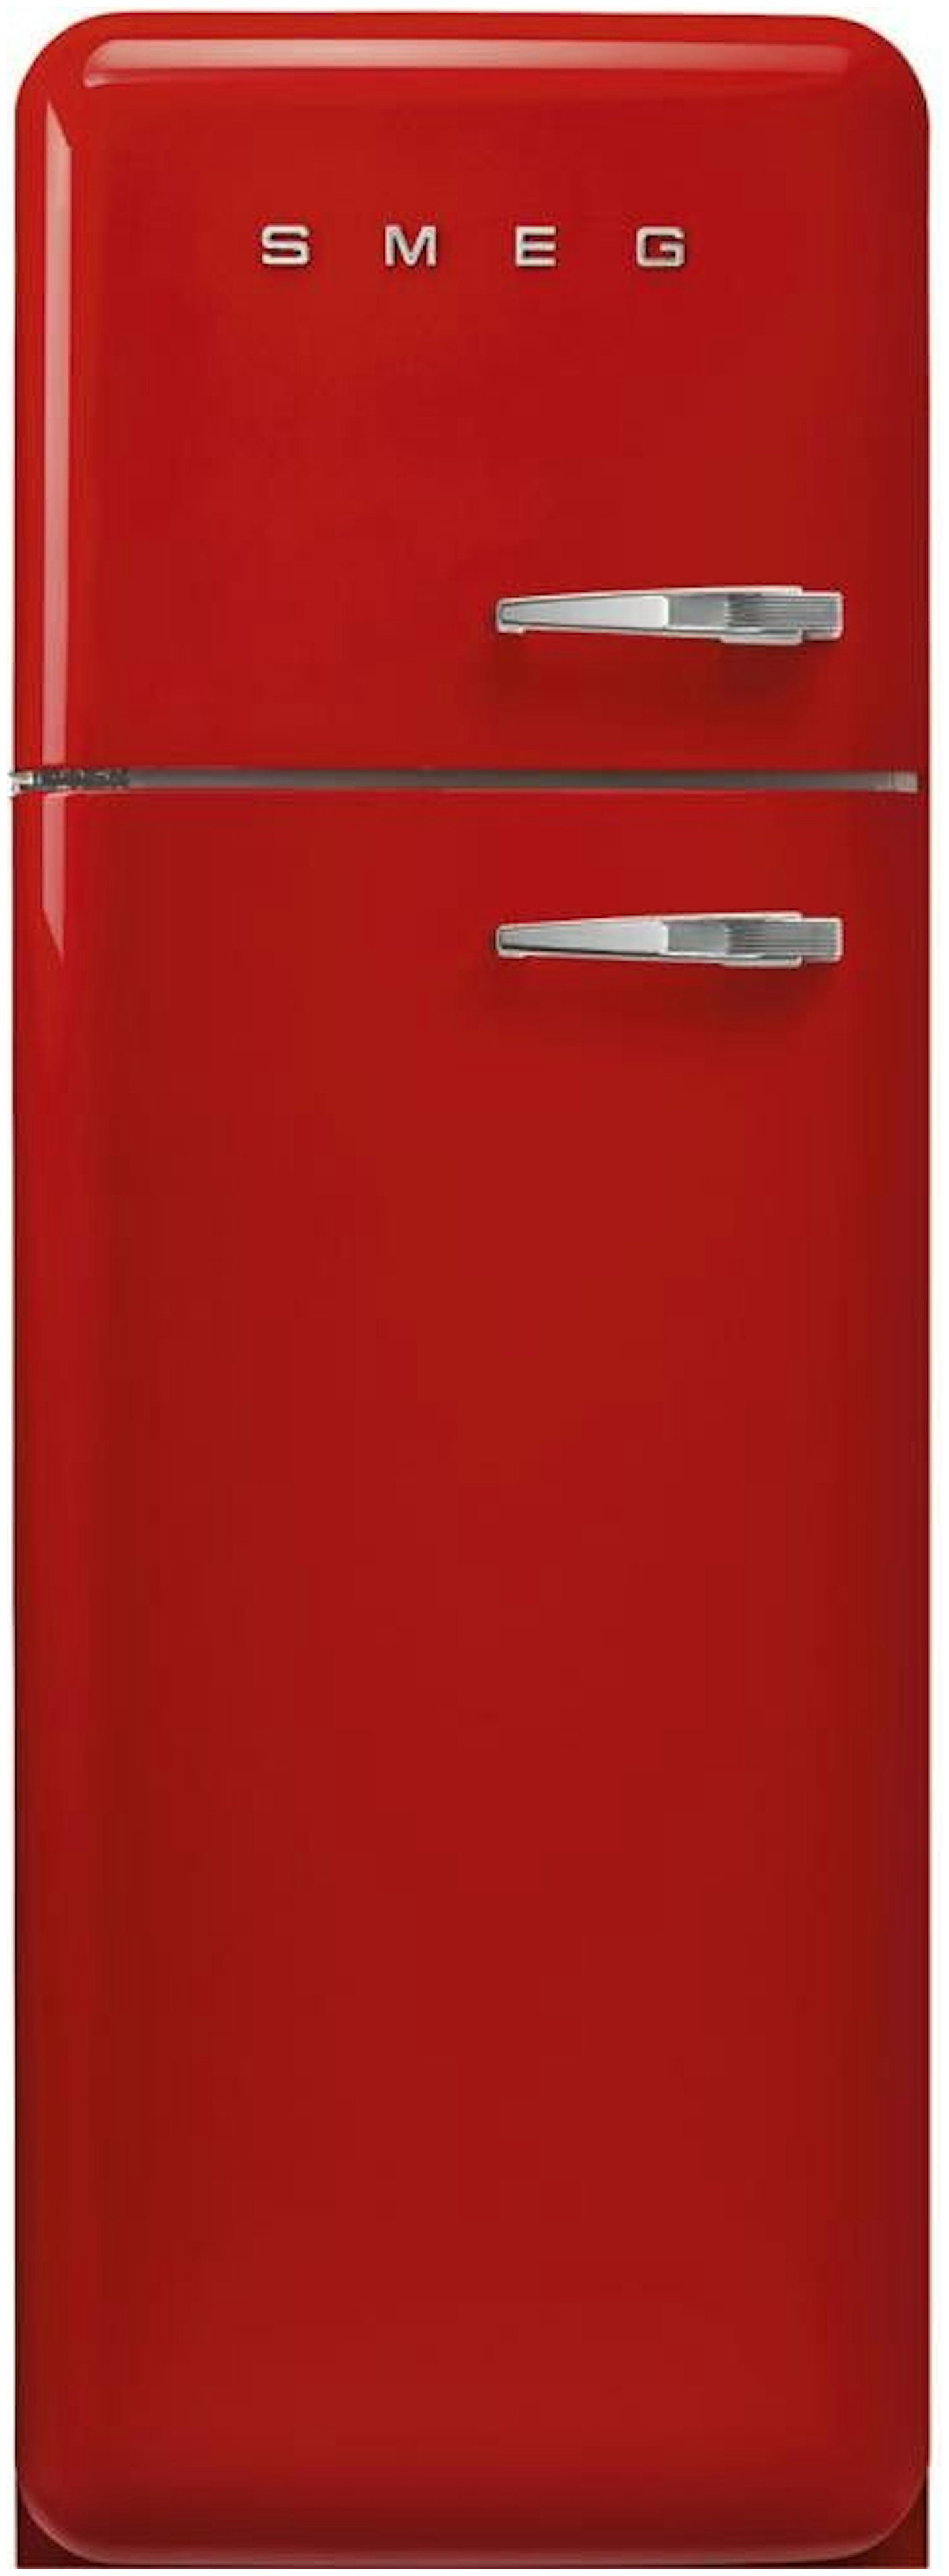 Verhandeling Auto Verdragen Rode koelkast kopen? - Alle koelkasten in de kleur rood!